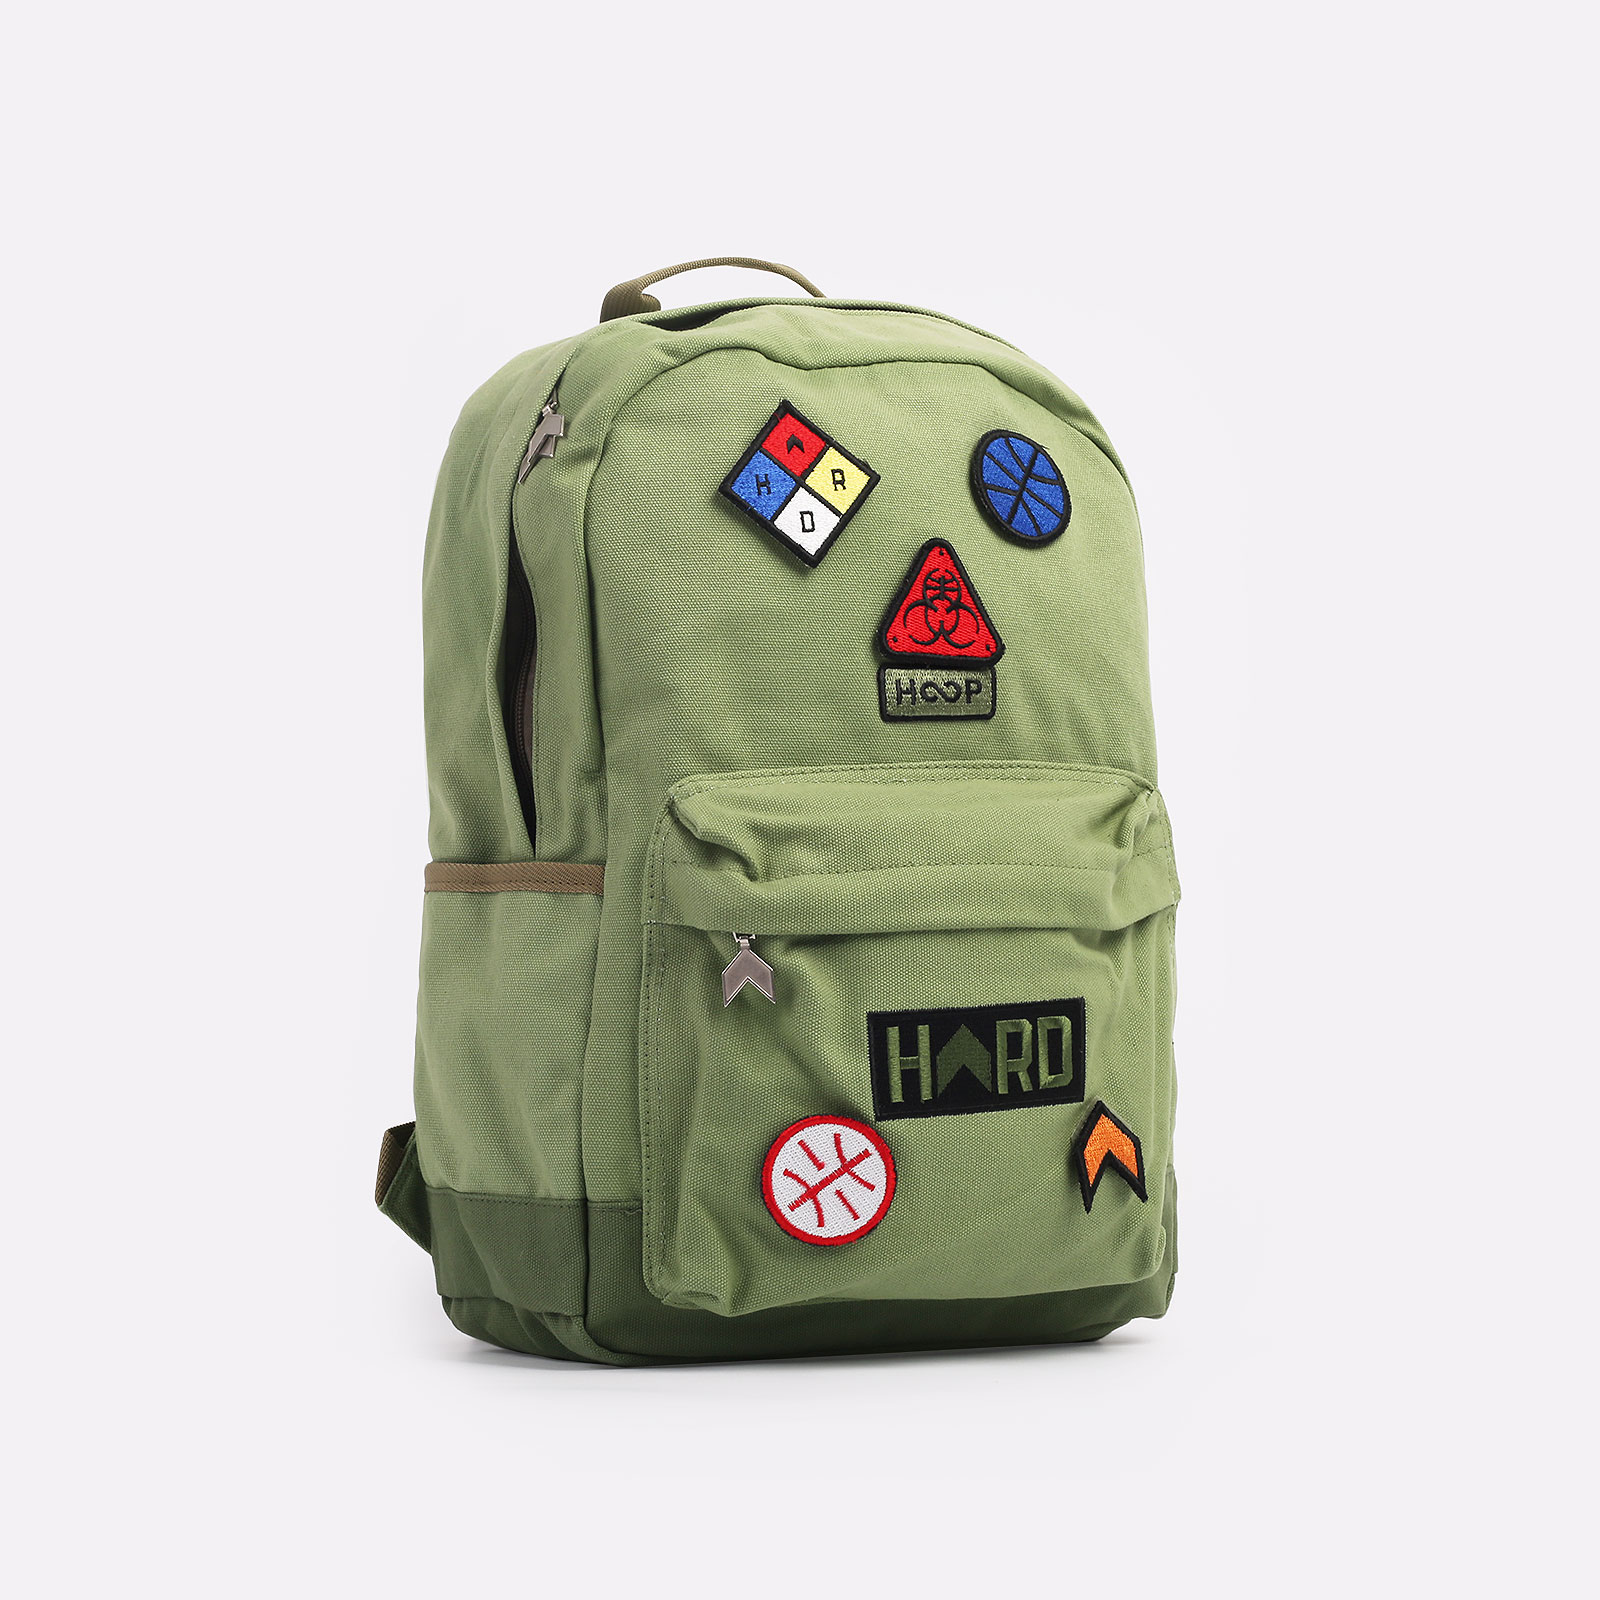  зеленый рюкзак Hard HD Backpack Medium backpack medium - цена, описание, фото 1